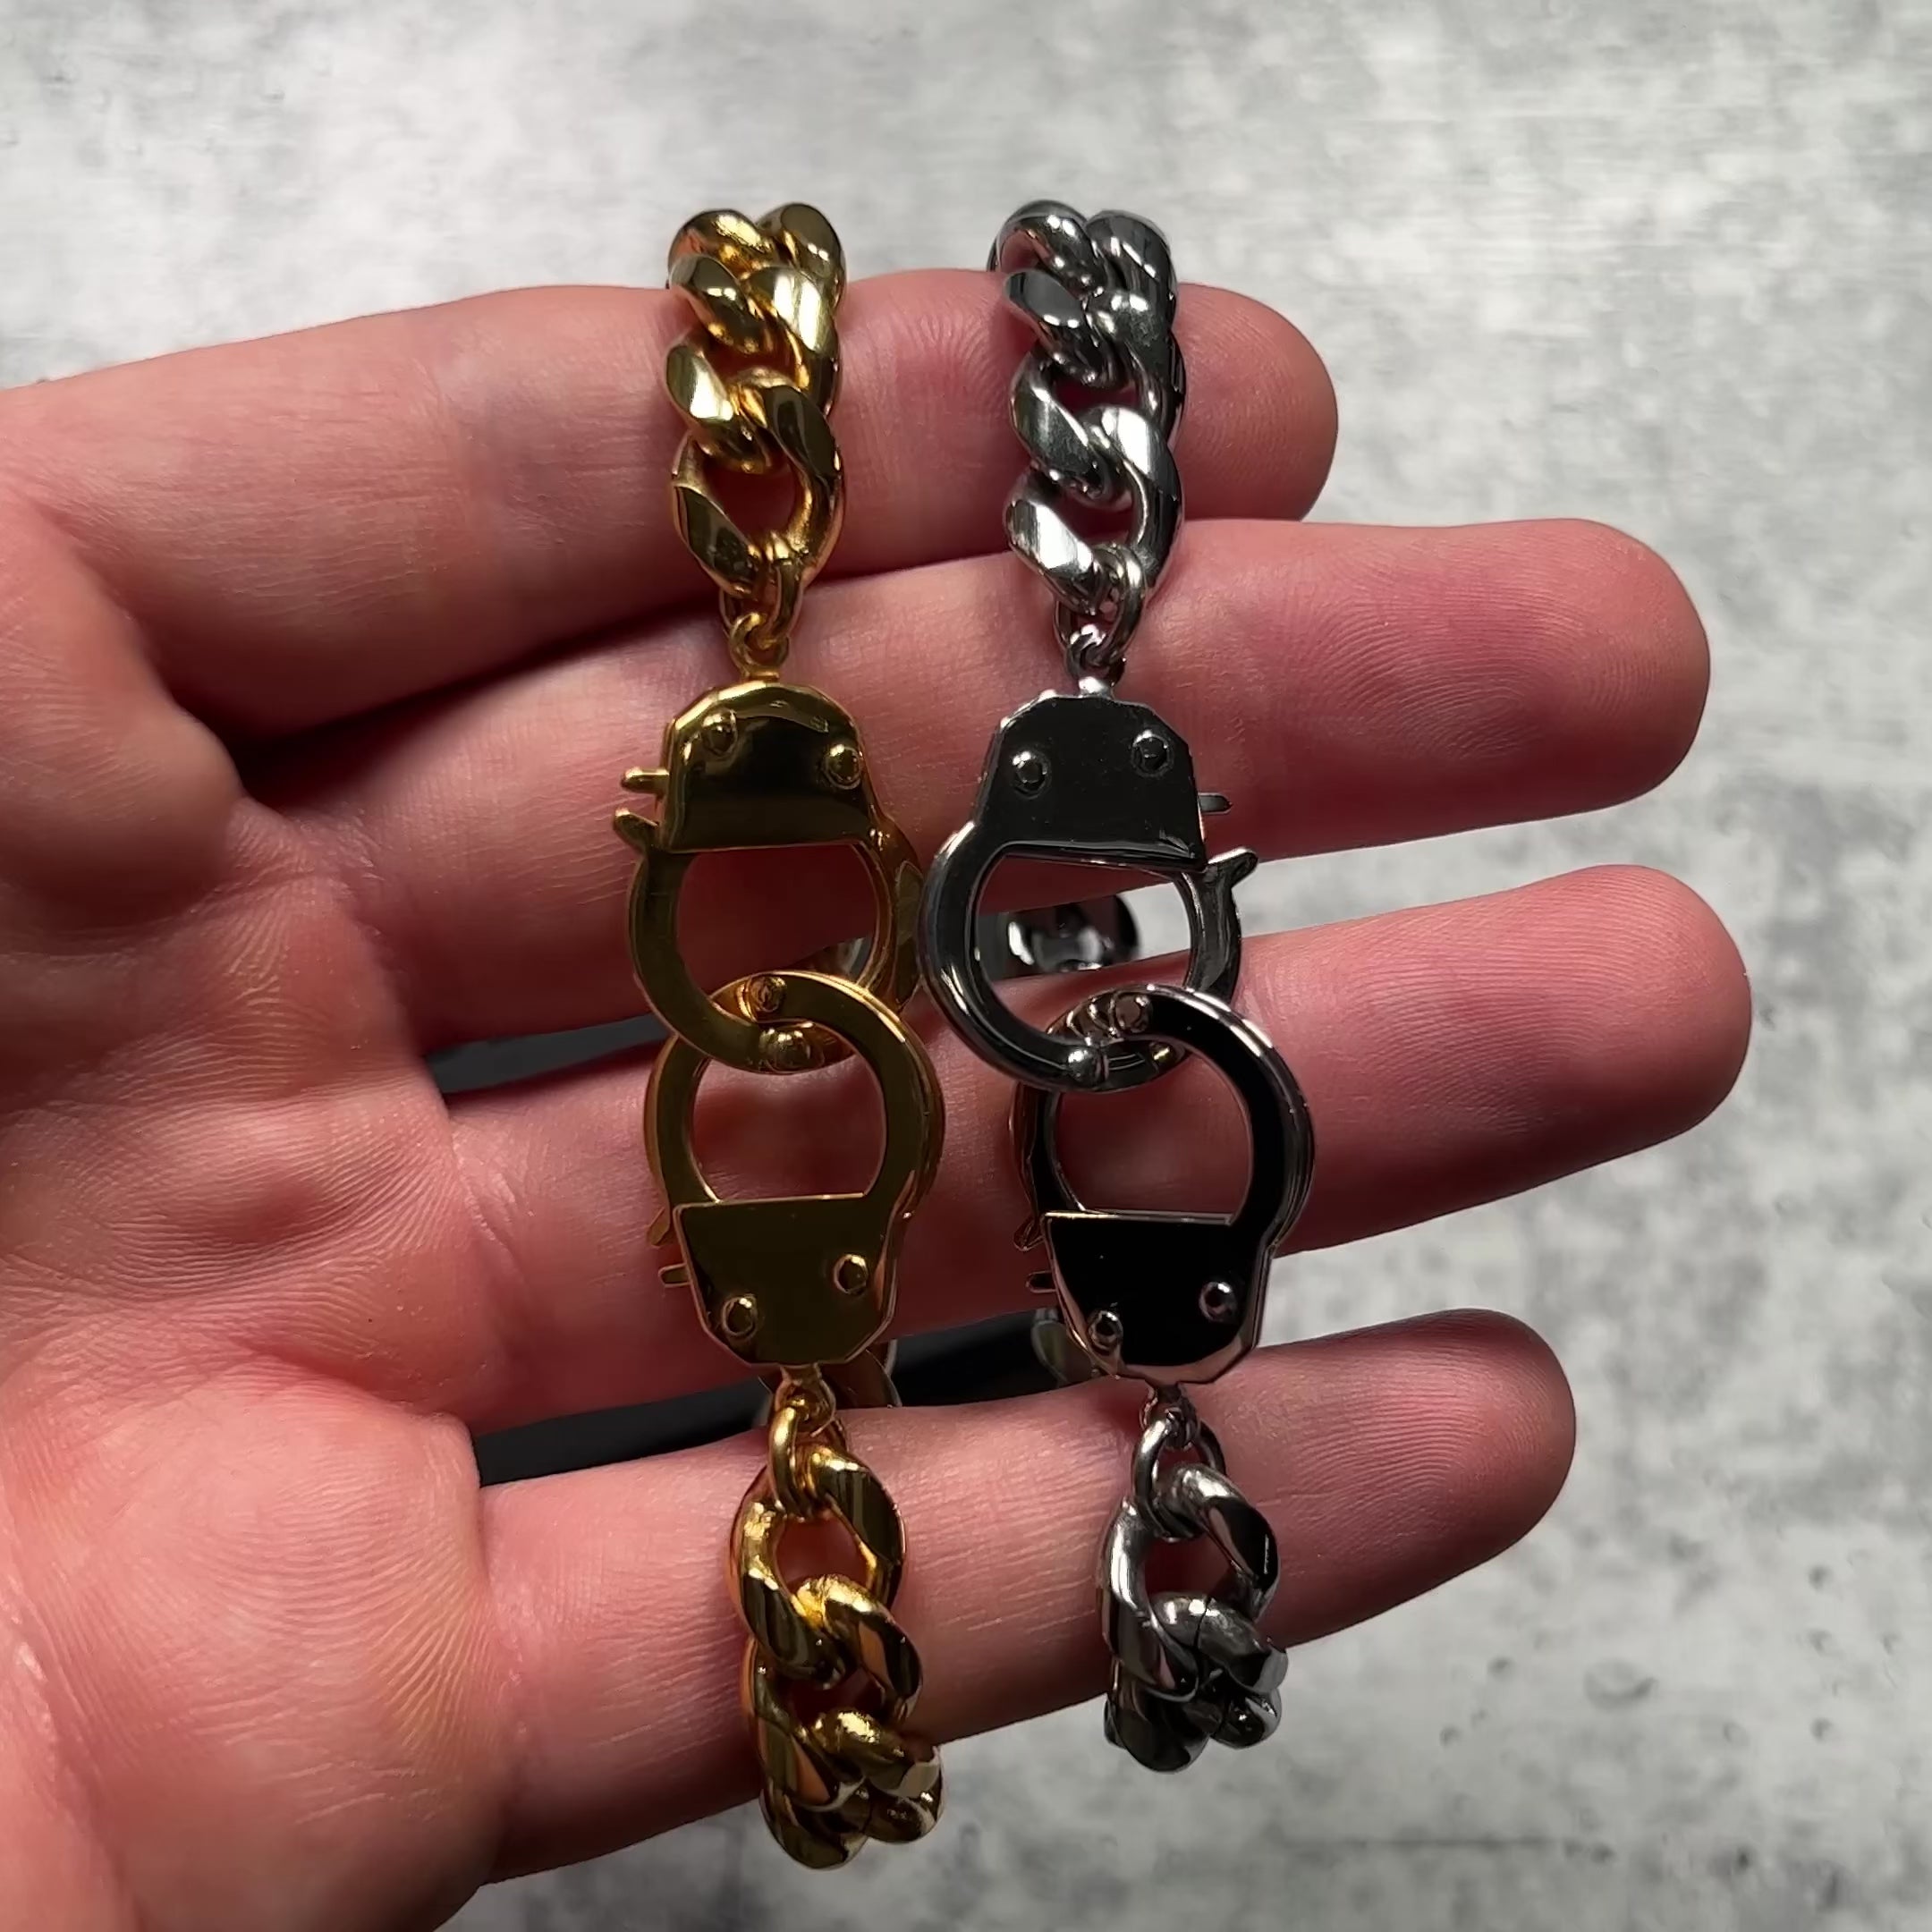 Cuban Cuff Chain Bracelet - Gold 10mm